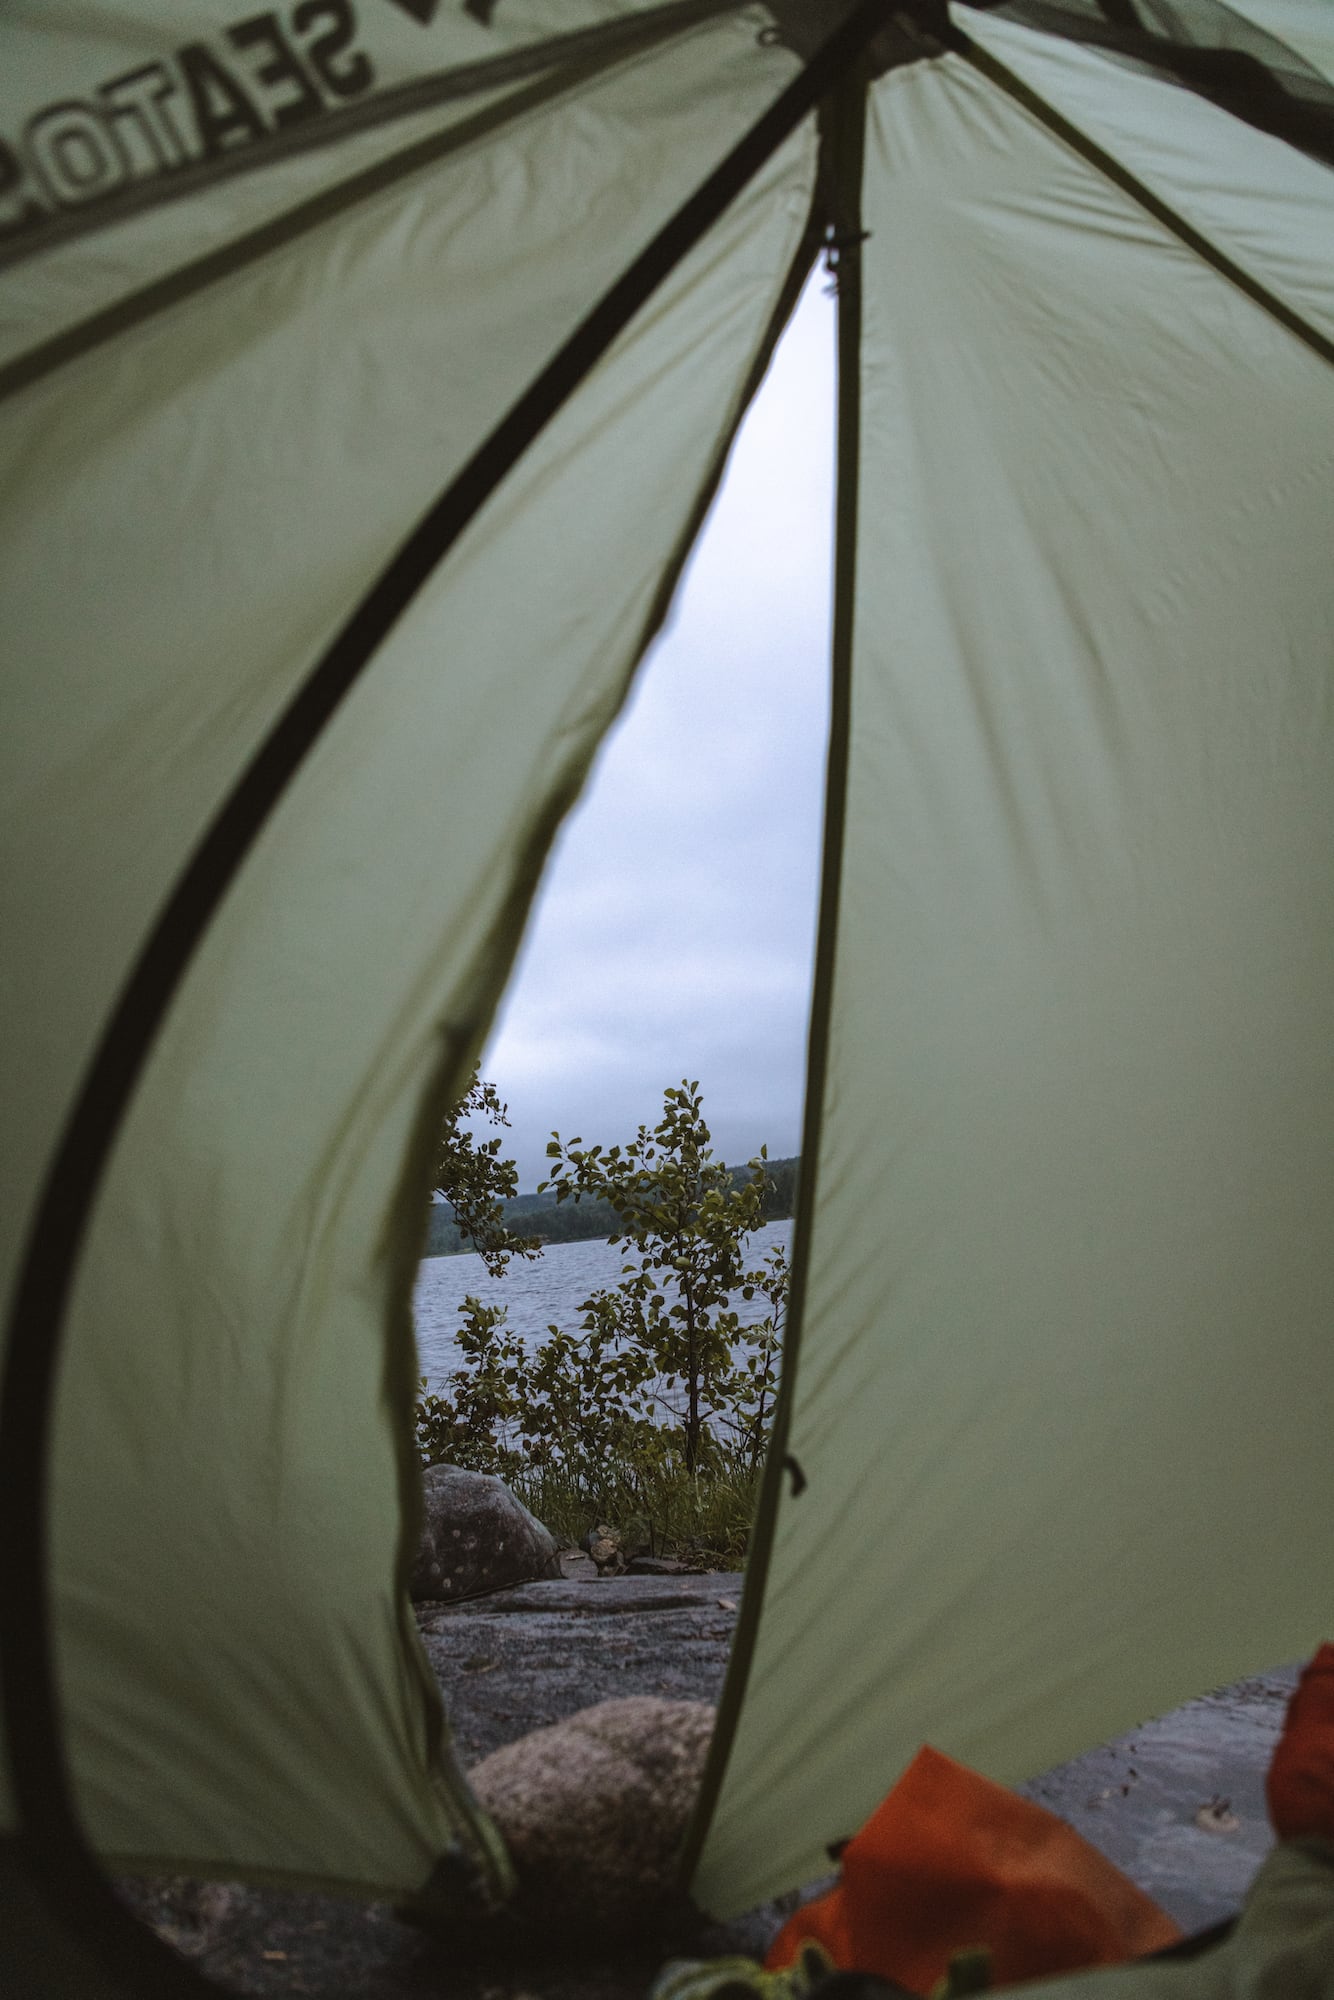 Naturschutzgebiete verbieten das Übernachten im Zelt